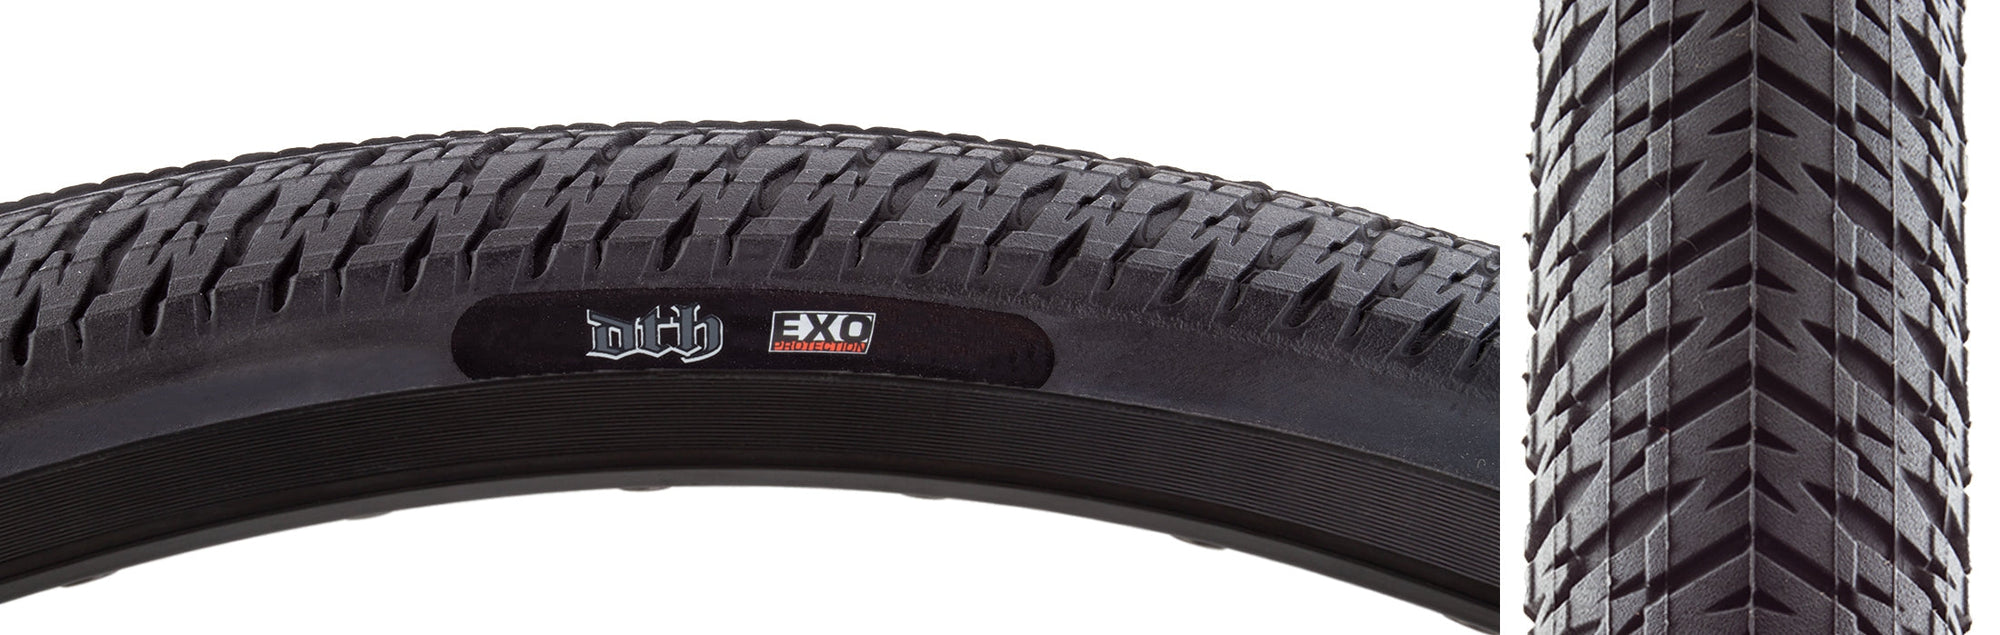 20x1.50 Maxxis DTH Tire - All Black